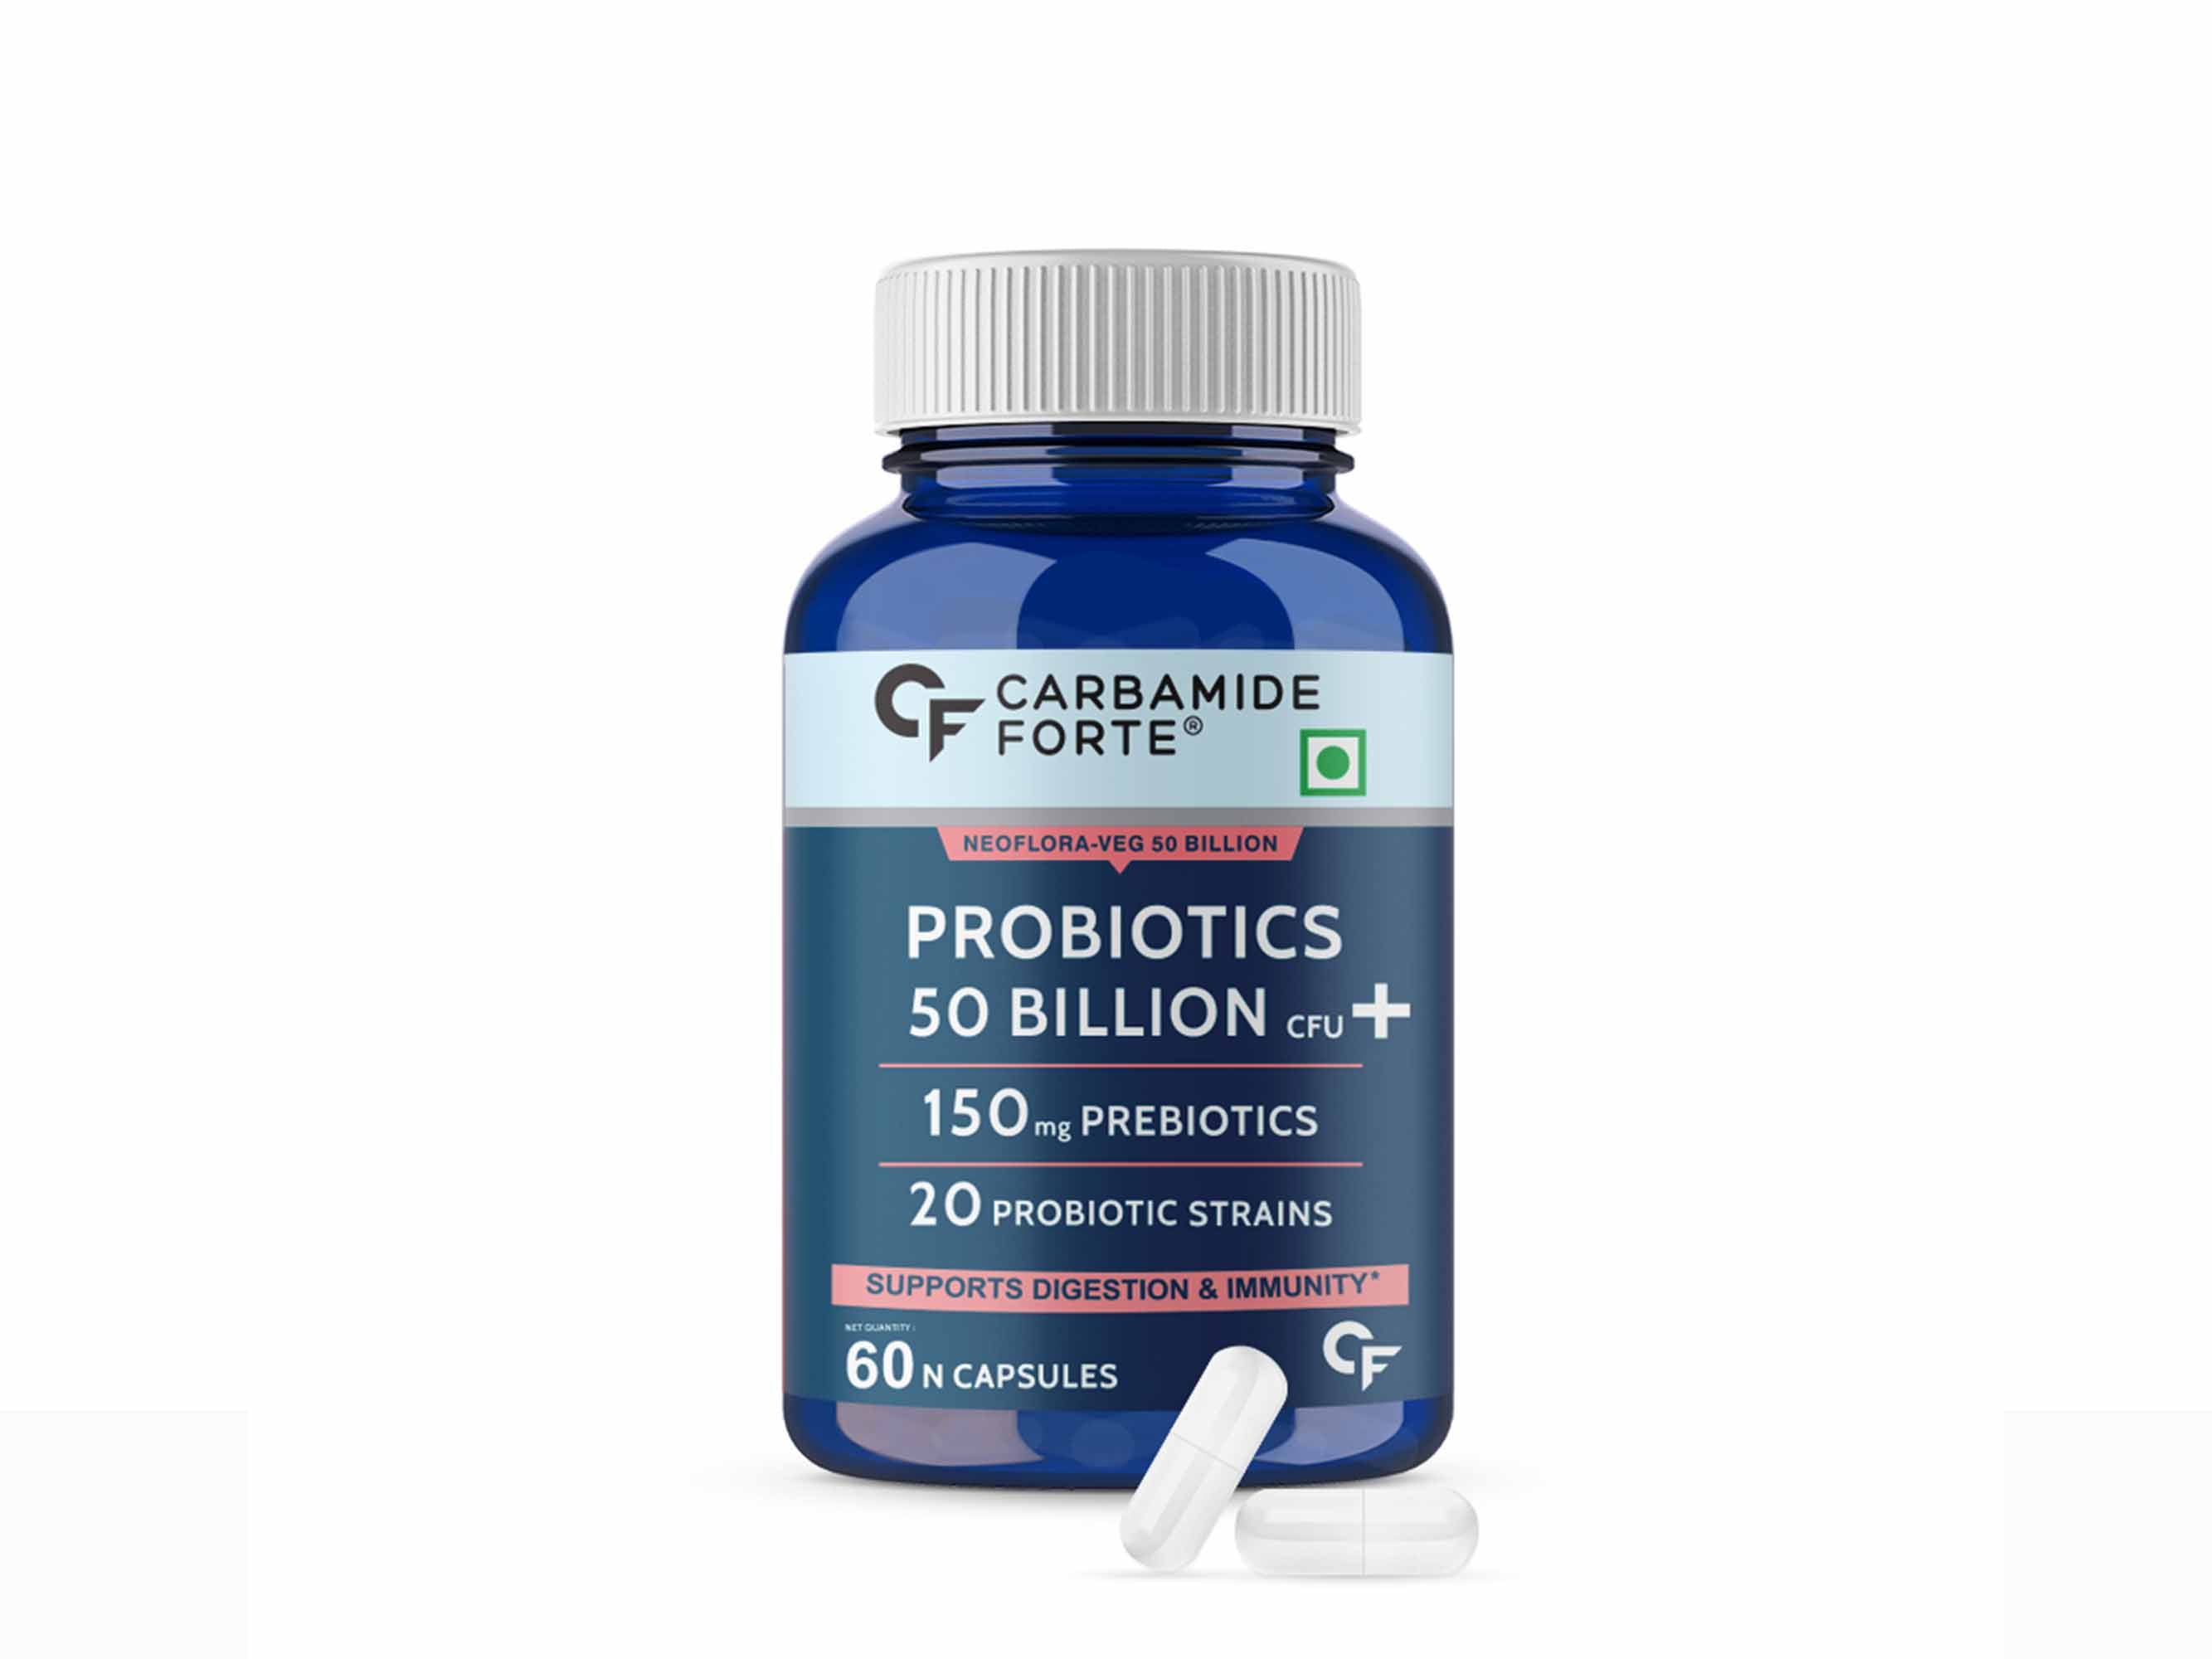 Carbamide Forte Probiotics 50 Billion CFU+ Capsule